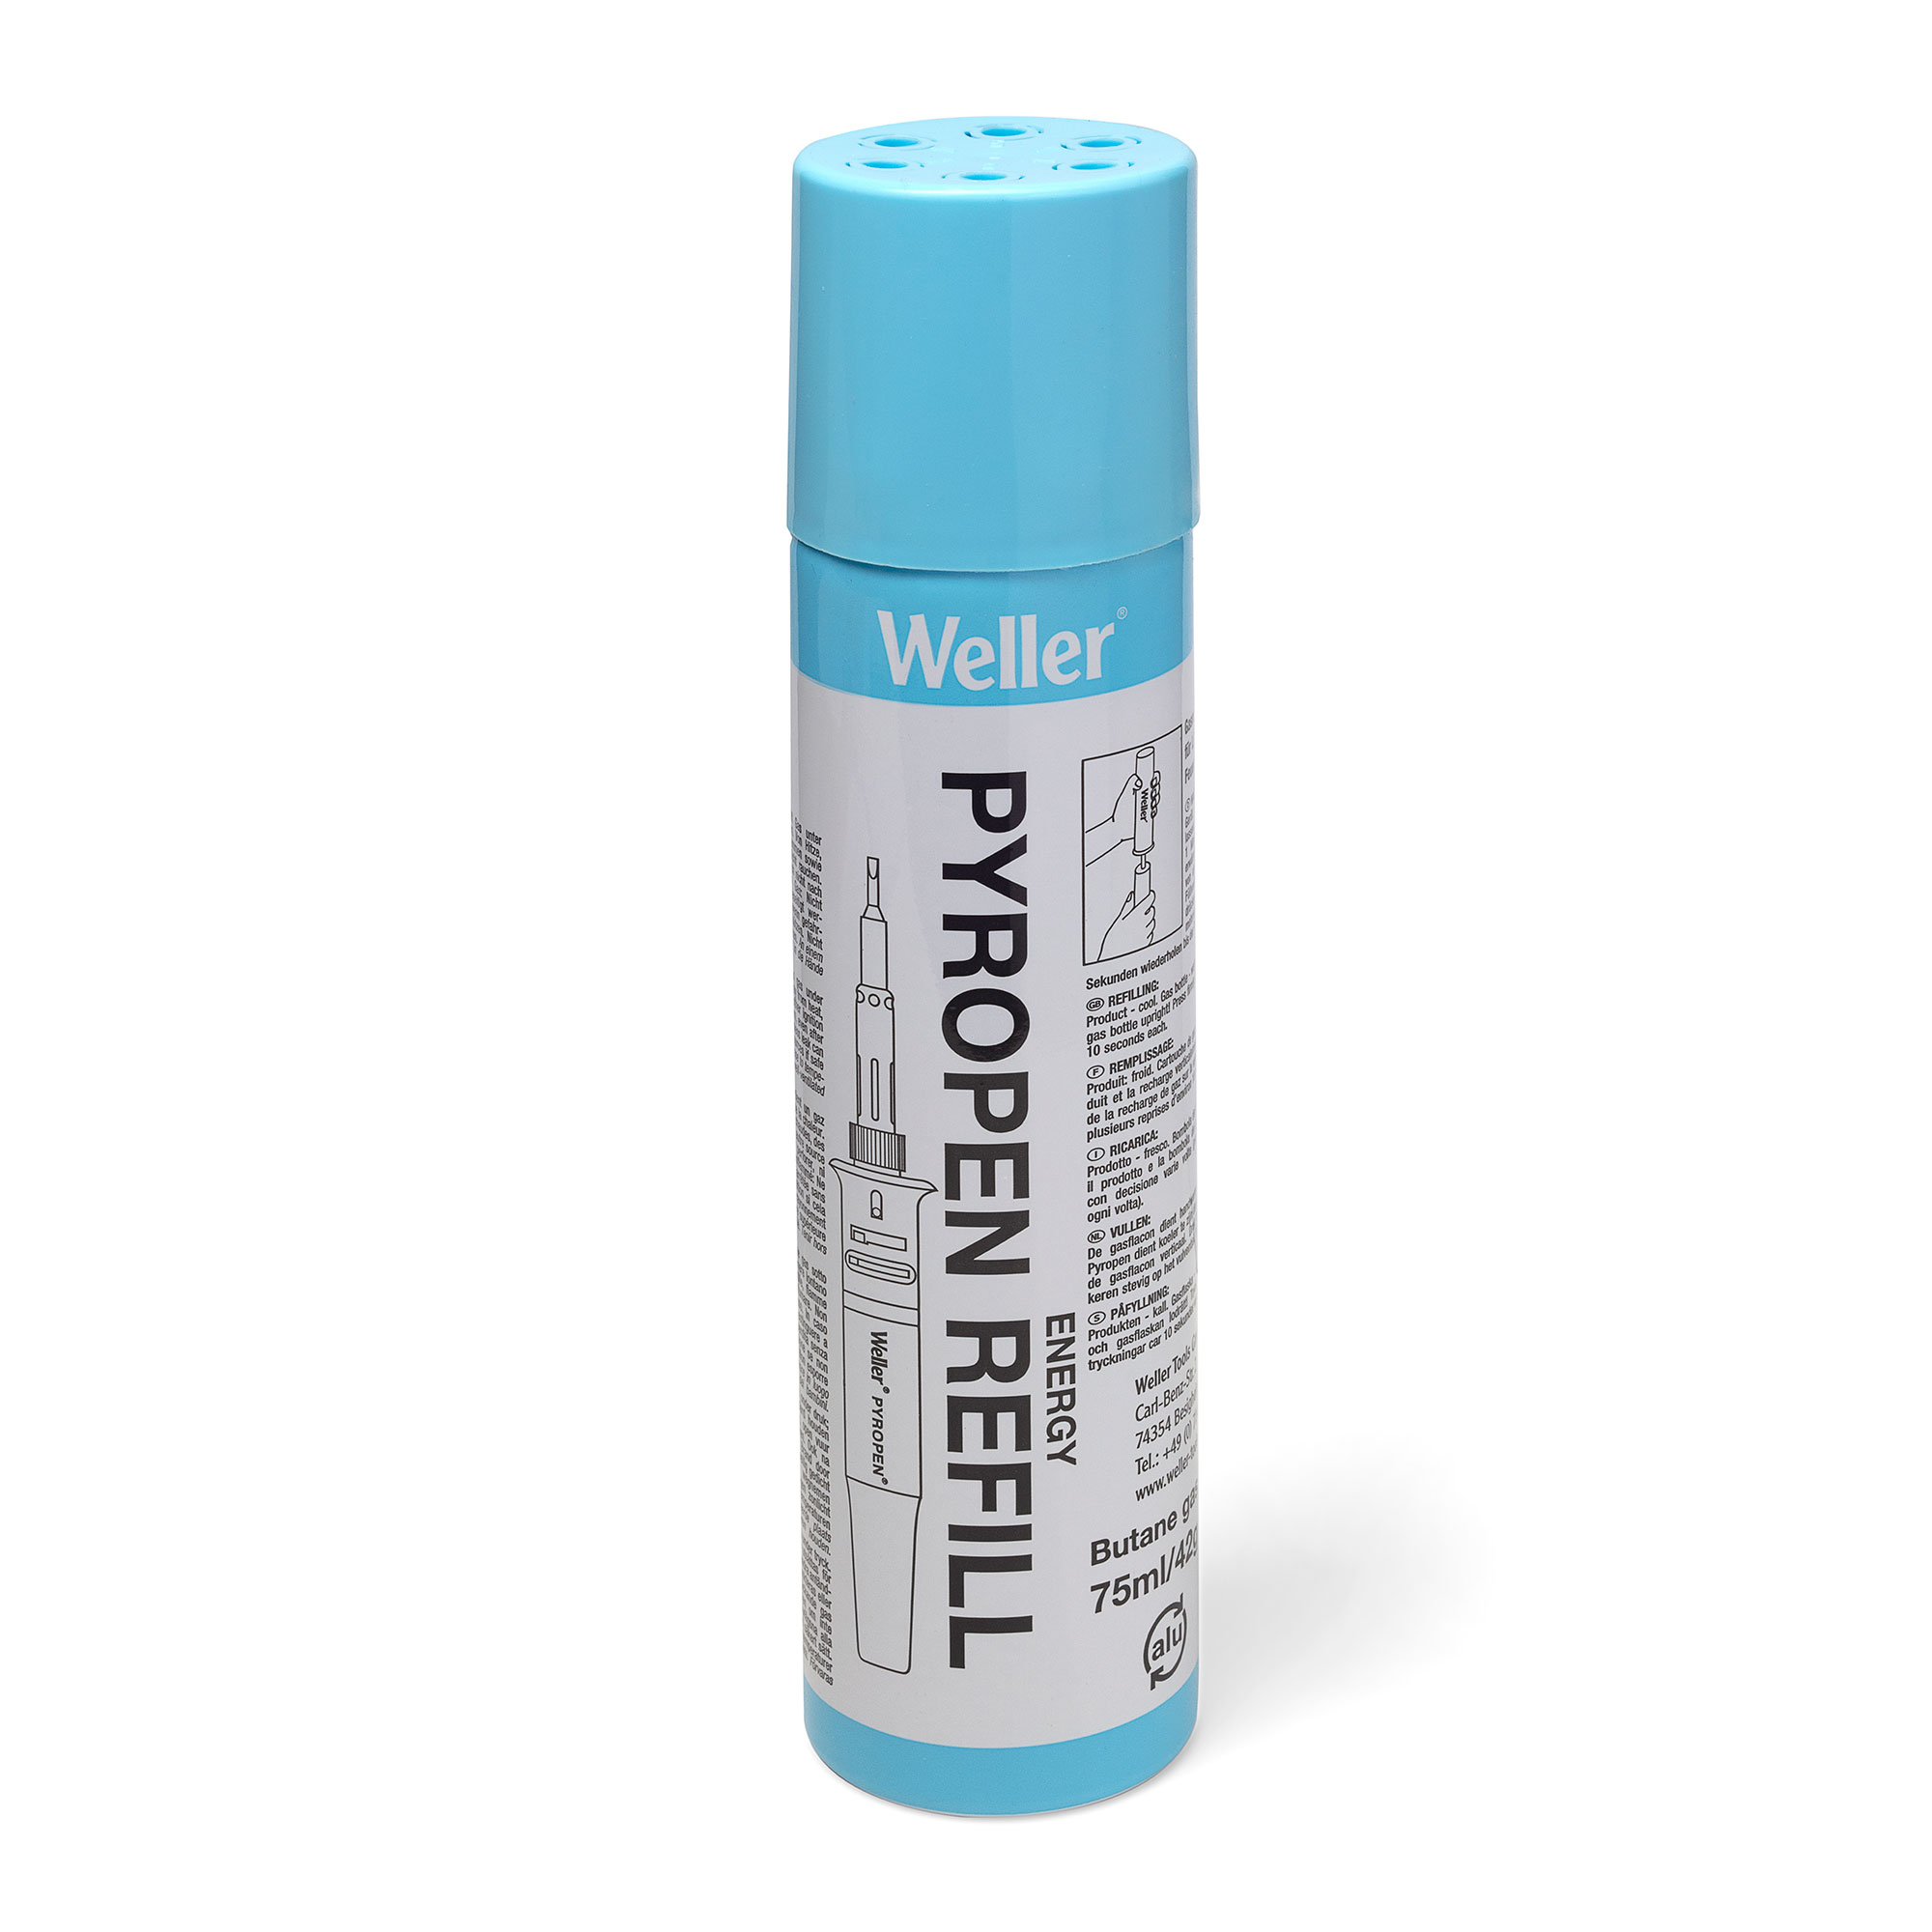 Weller® draadloos solderen gasvulling